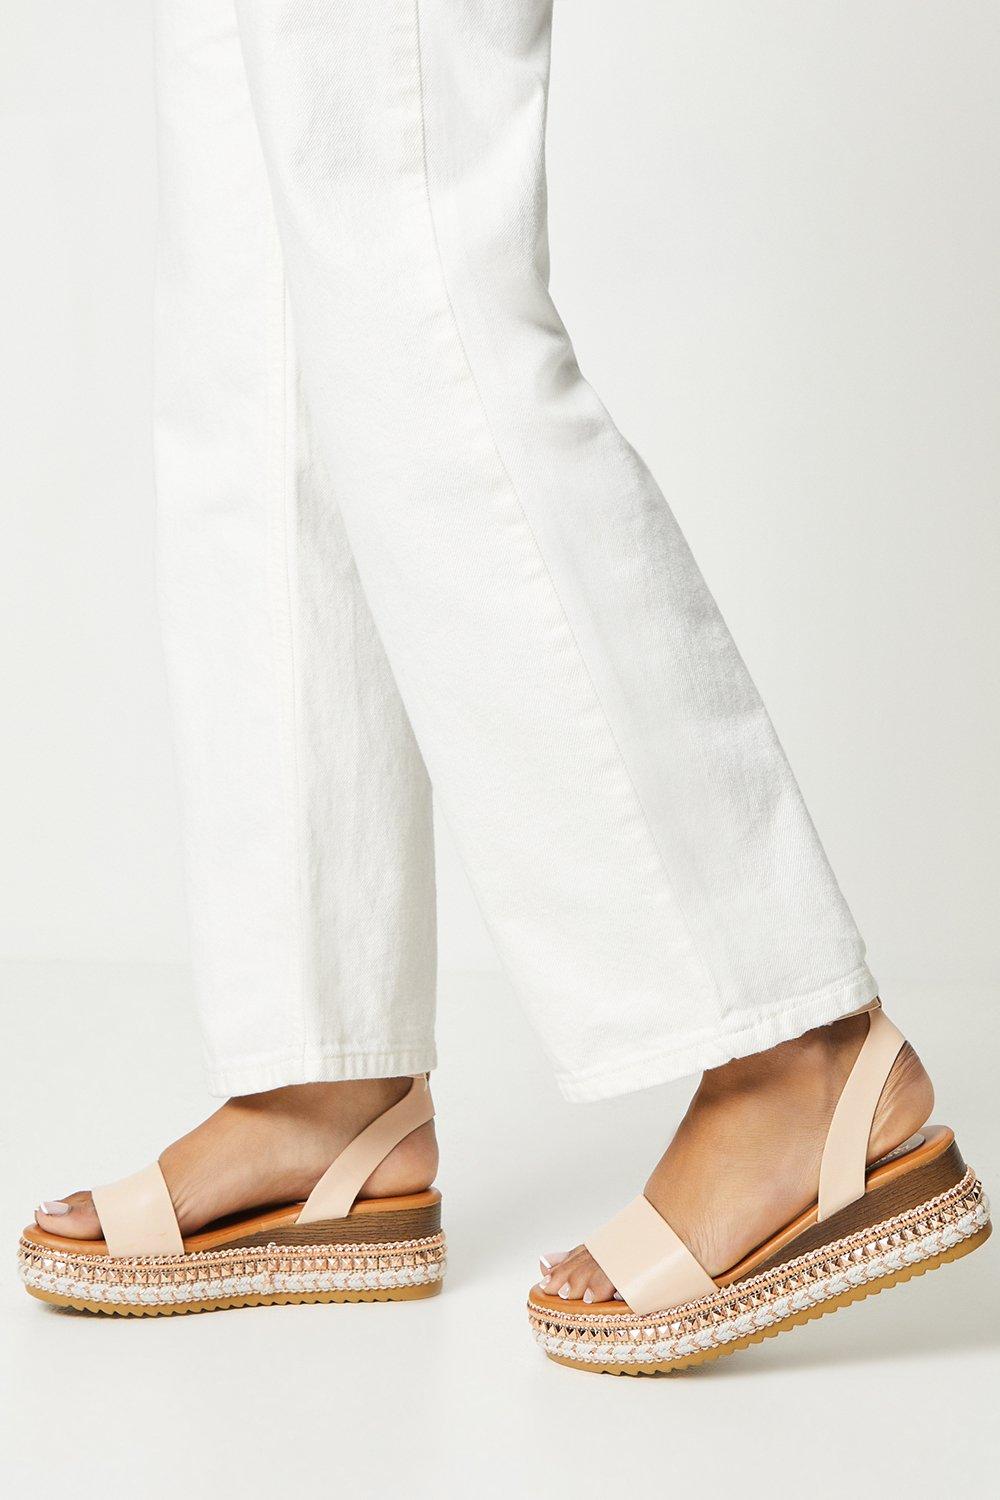 Womens Good For The Sole: Melli Embellished Flatform Sandals